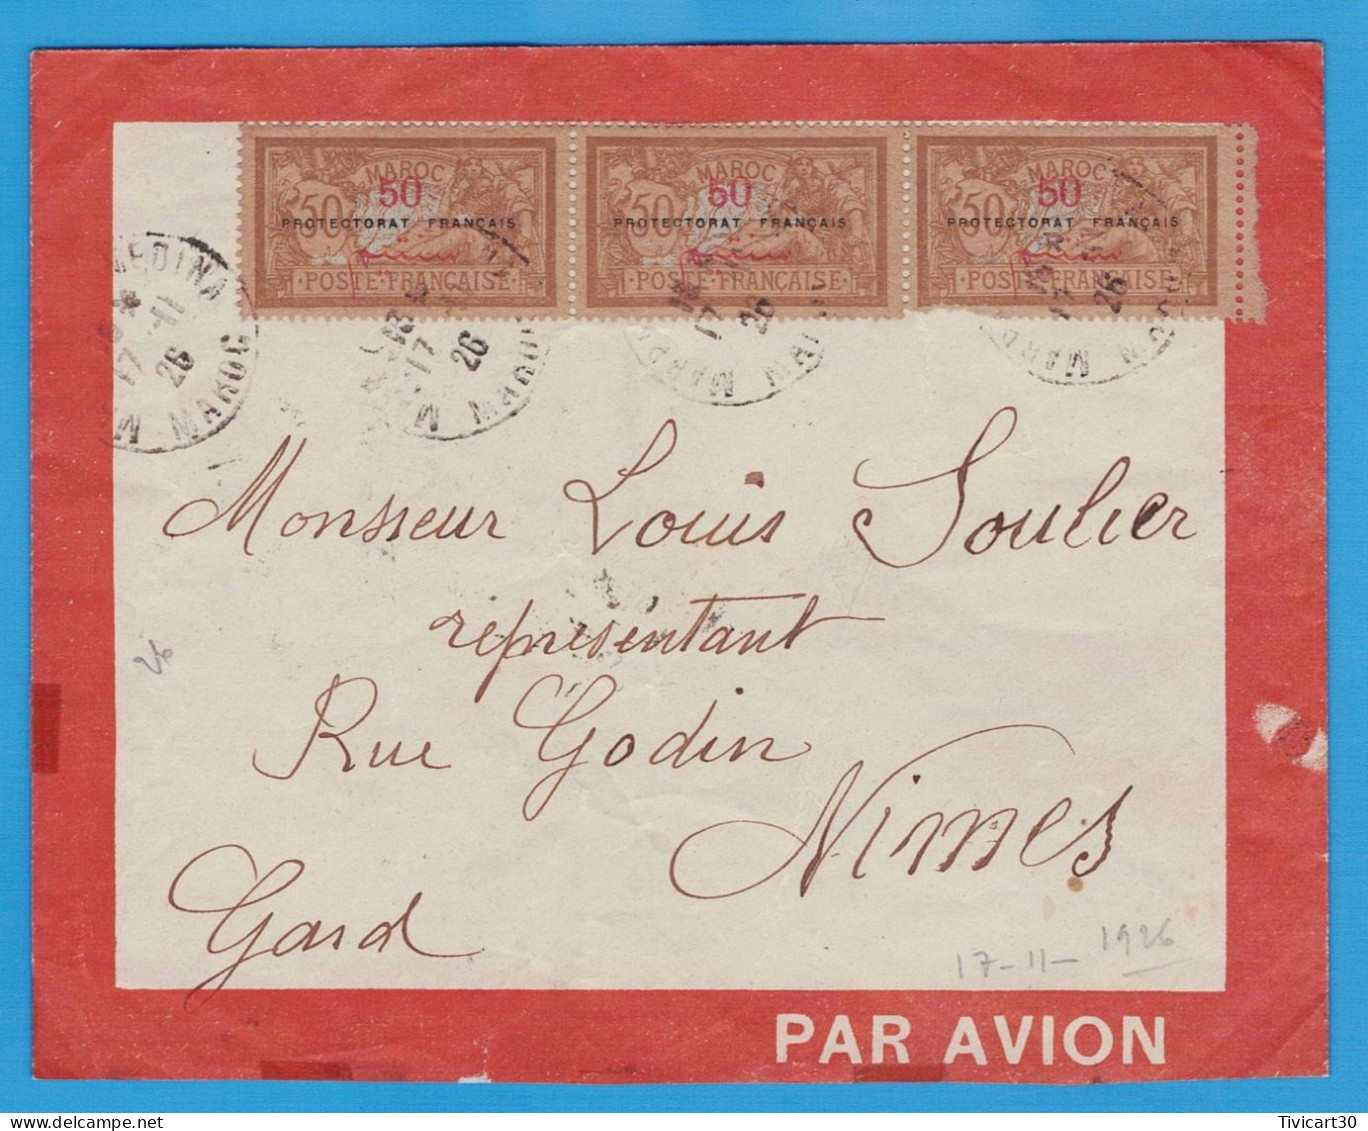 LETTRE PAR AVION DE 1926, MAROC POUR LA FRANCE - LIGNES AERIENNES FRANCE-MAROC-ALGERIE-SENEGAL -TIMBRES MERSON SURCHARGE - Airmail